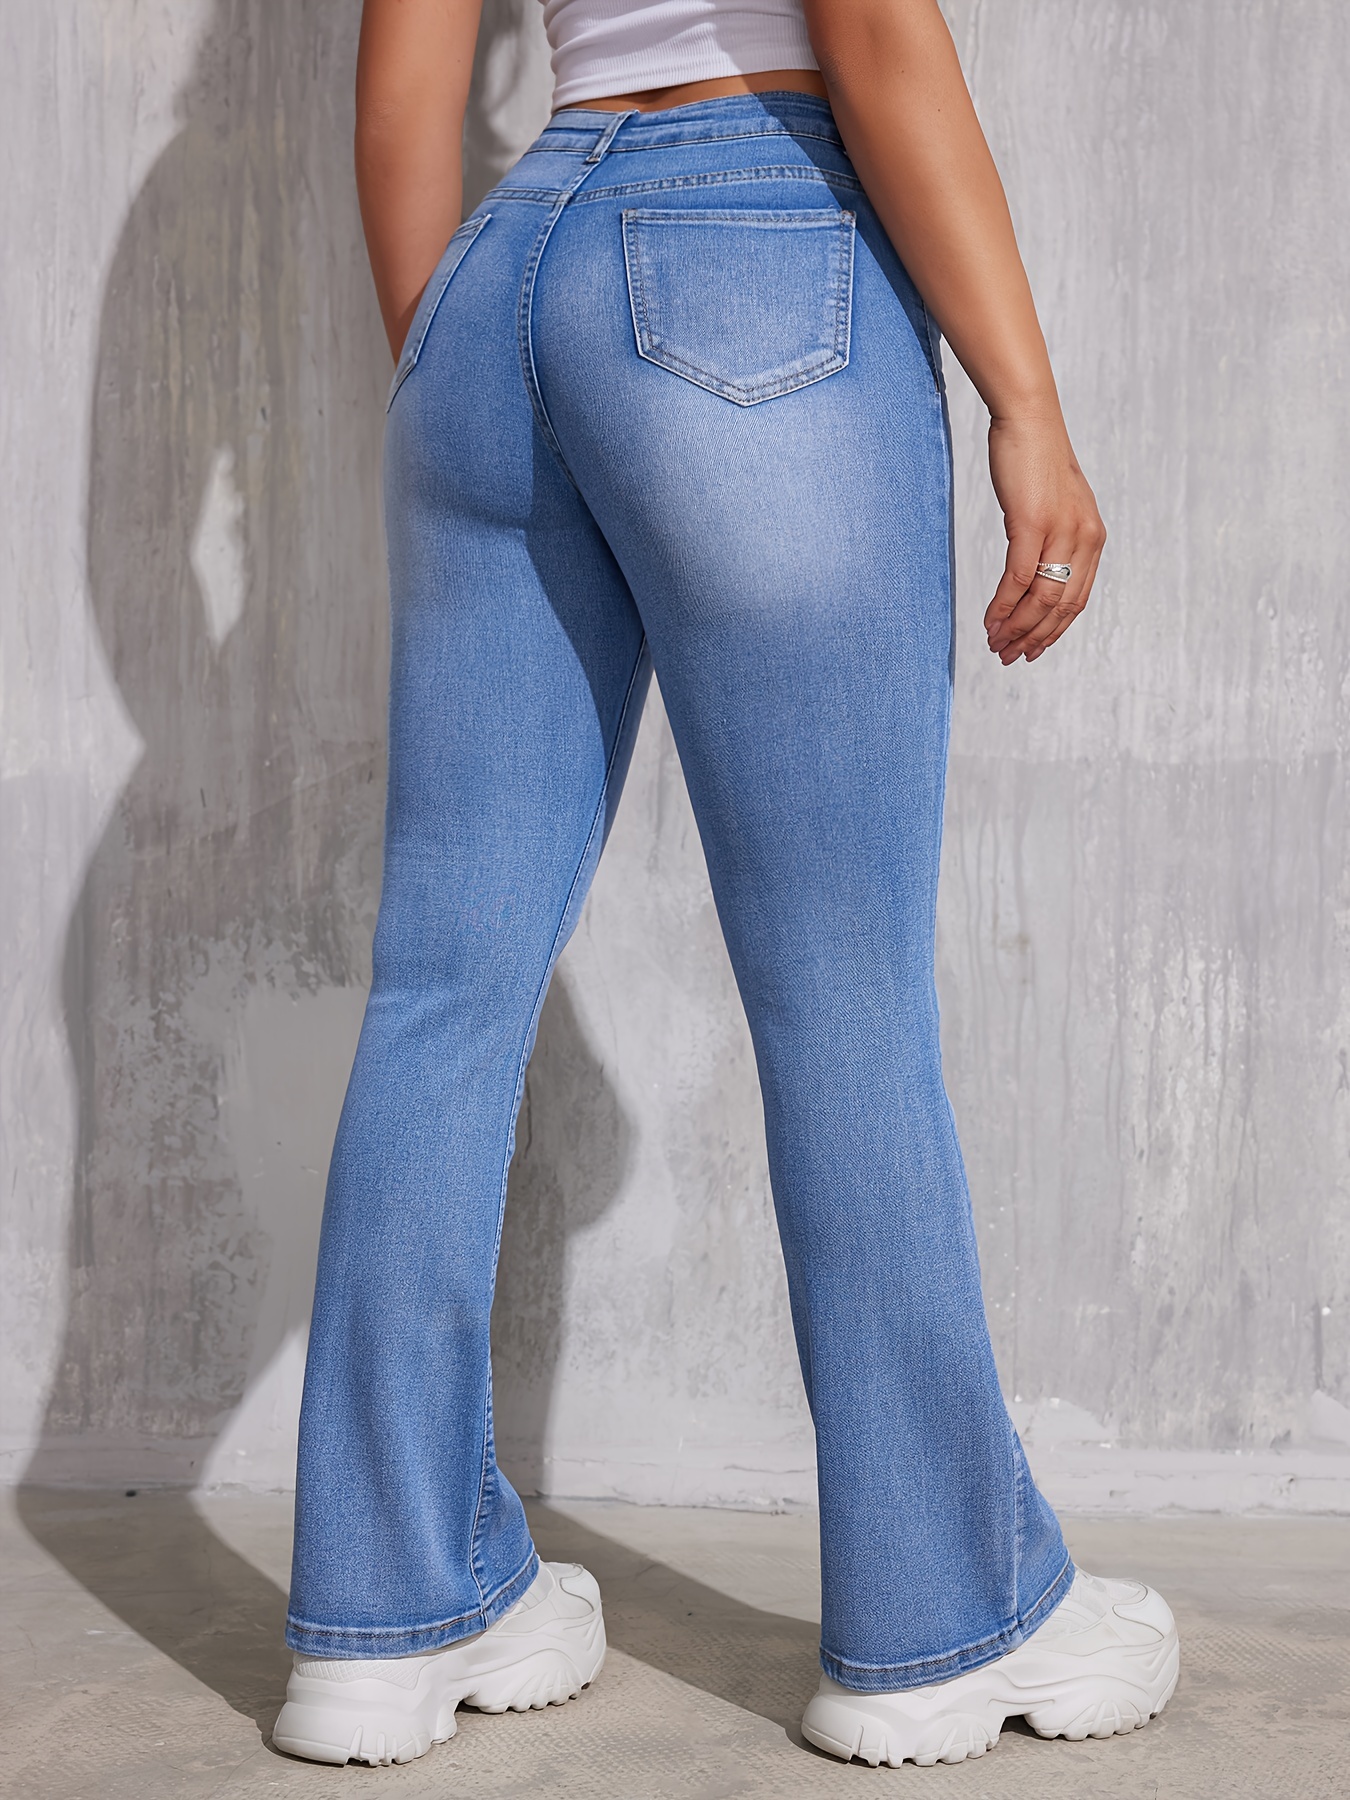 Preto moda lavada Ripado Alta Estrangulados Mulheres Curto Jean jeans curtos  - China Alto curtos e aflito jeans curtos preço